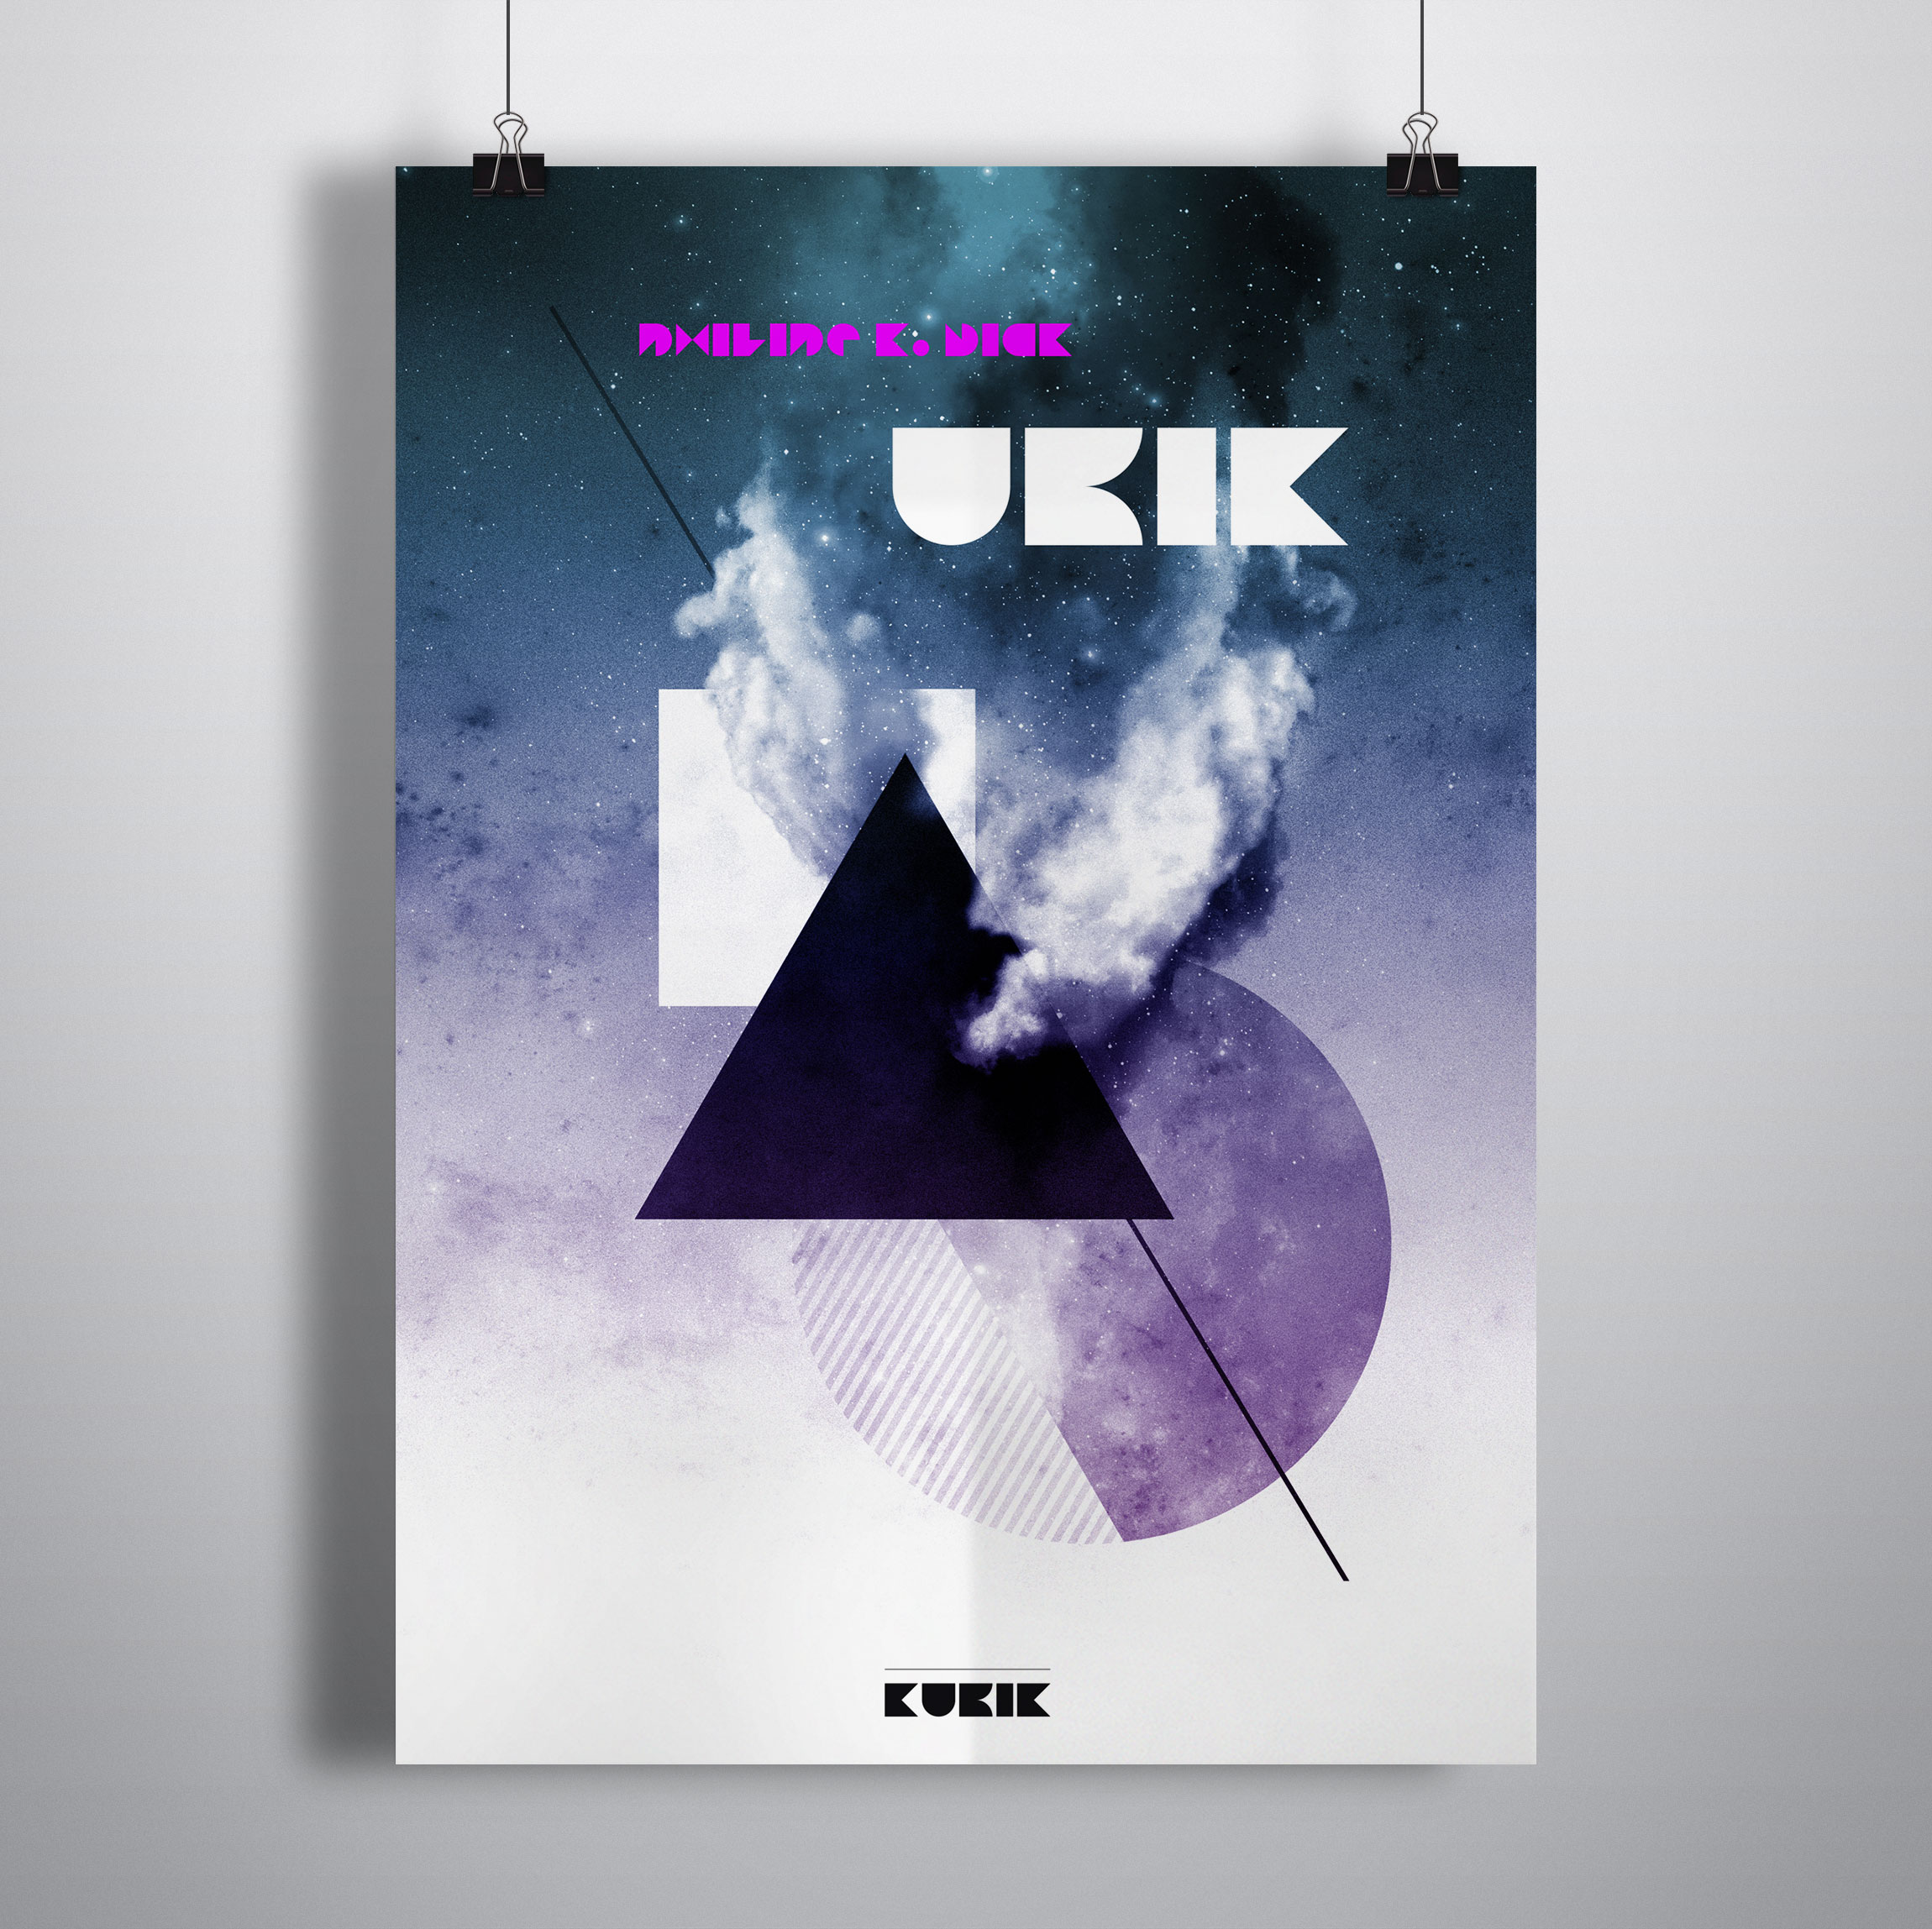 Création affiche UBIK de Philipe K.Dick pour KUBIK